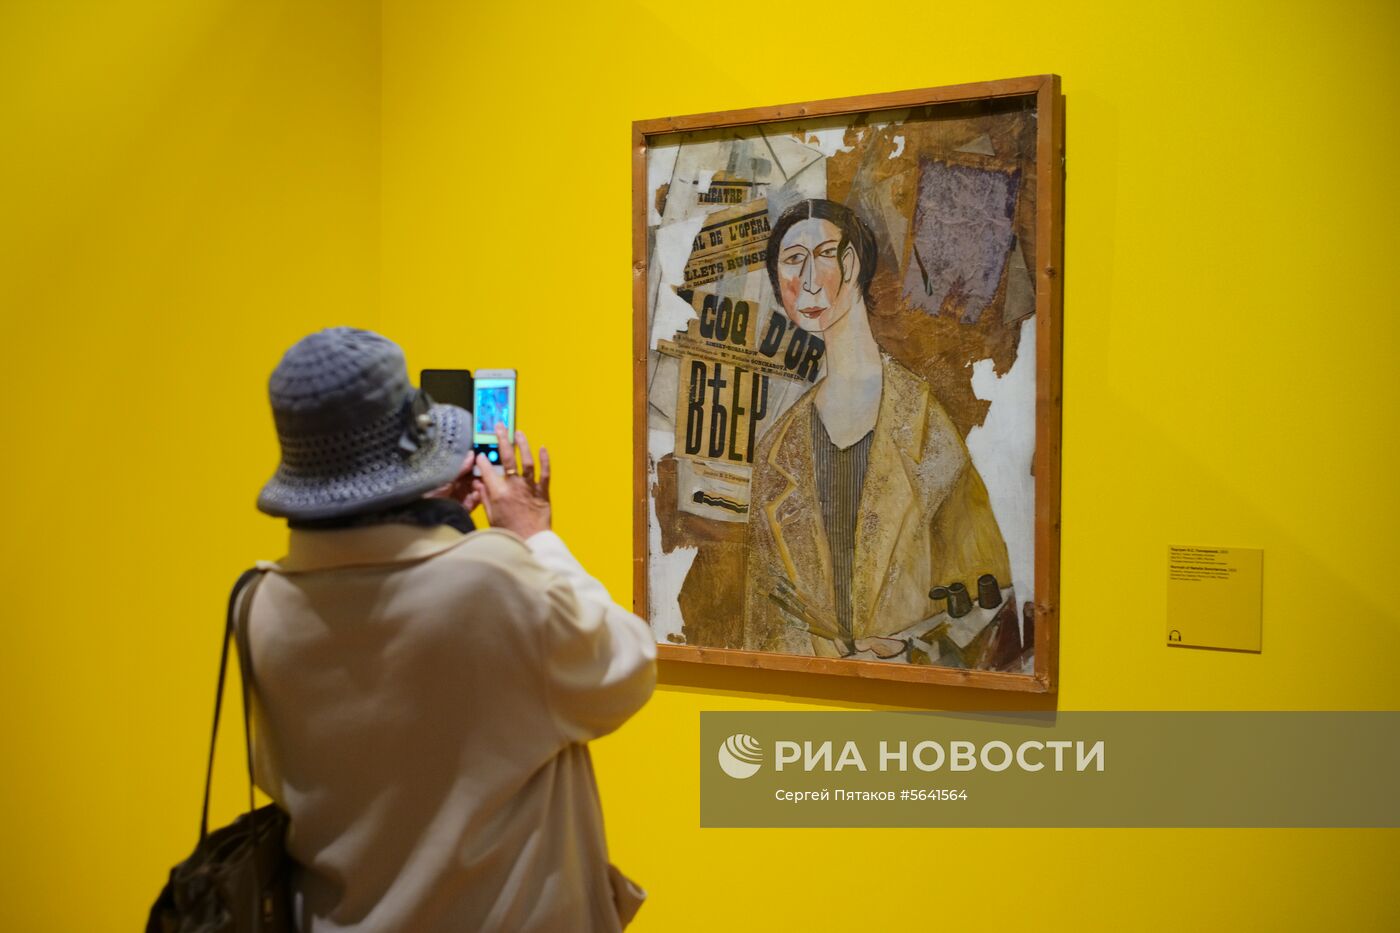 Выставка "Михаил Ларионов" в Третьяковской галерее